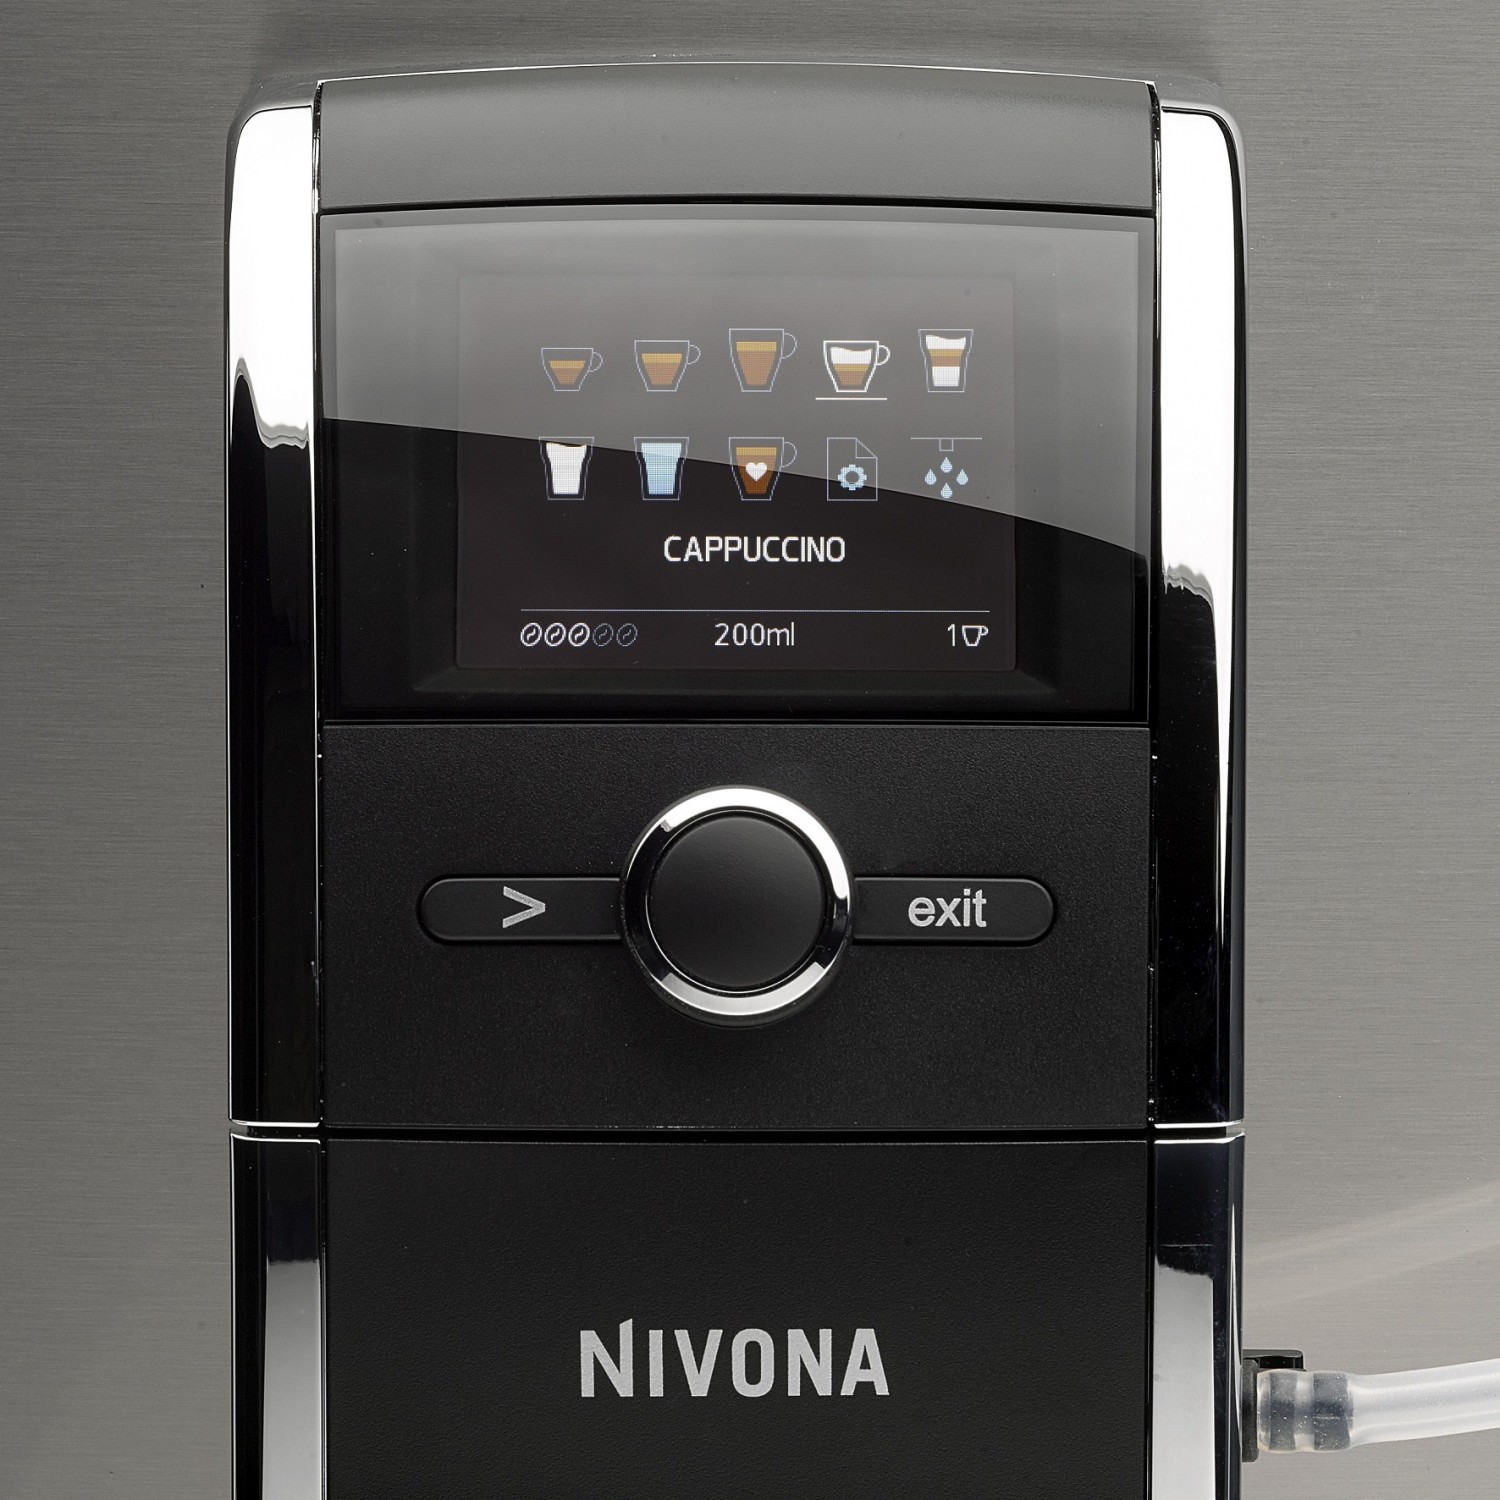 Kaffeevollautomat Nivona CafeRomatica 858 im Test, Bild 3